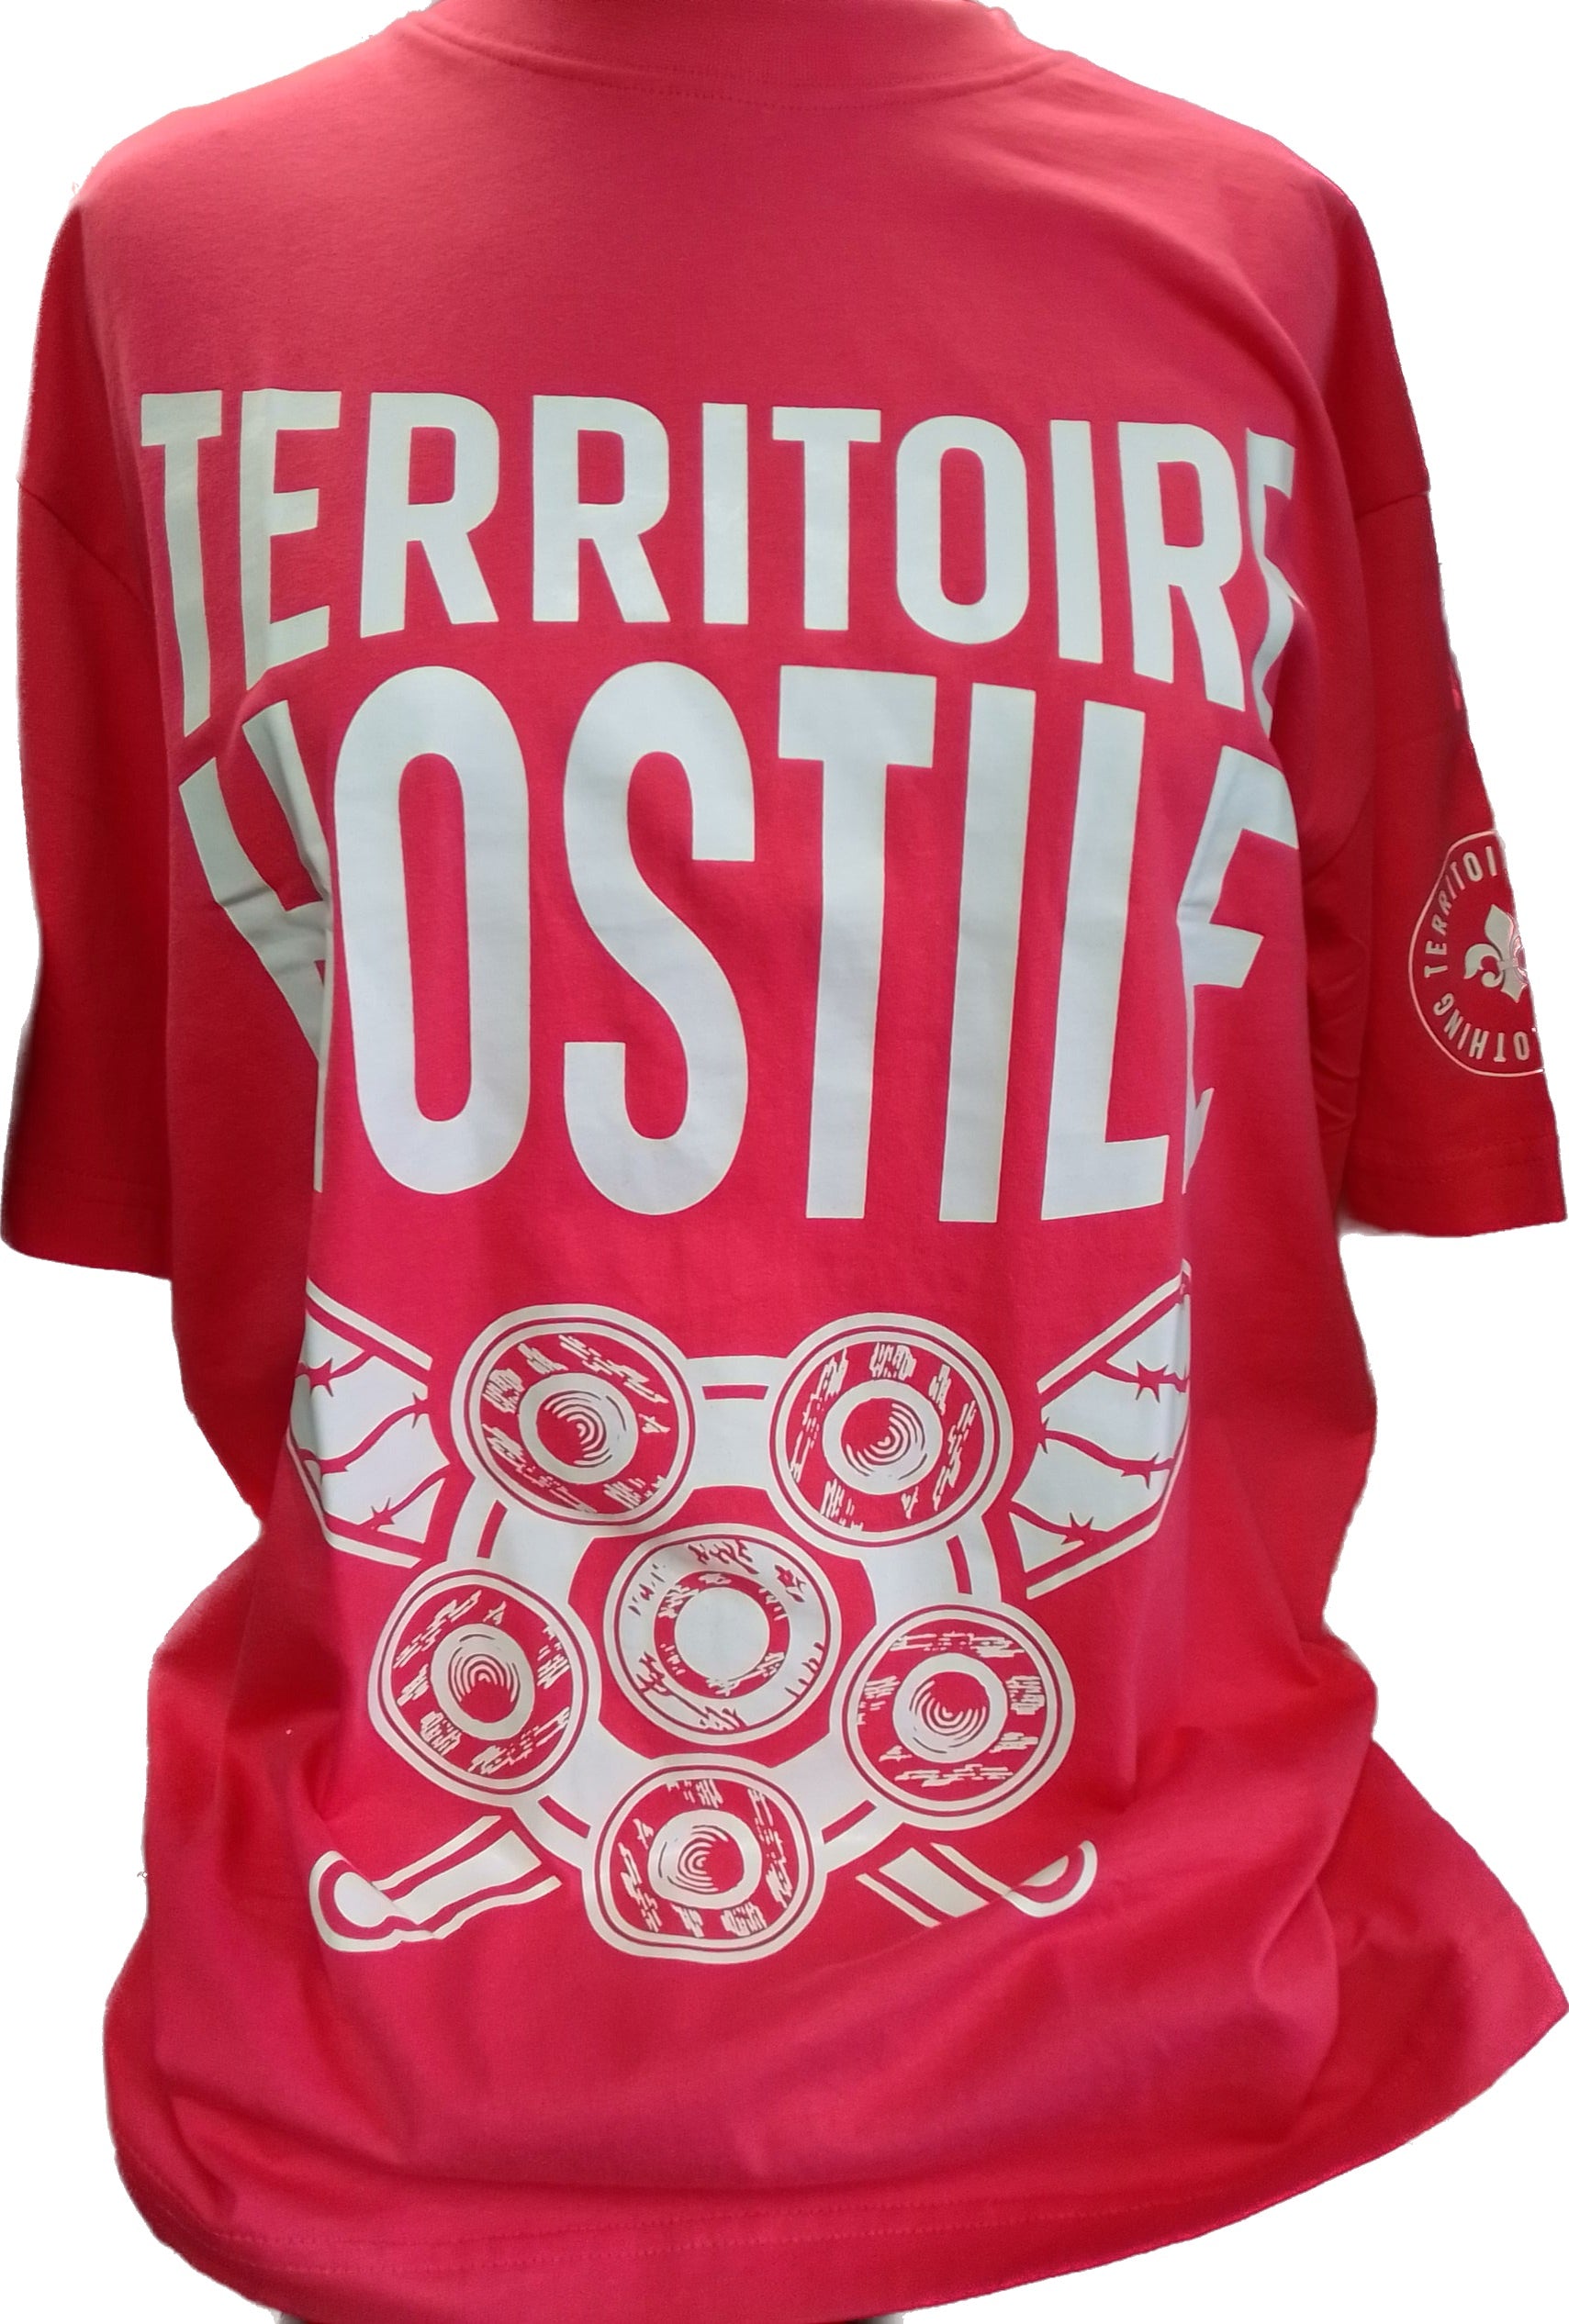 T-shirt Territoire Hostile/Sans Pression | Taverne à boucane | Reviews ...